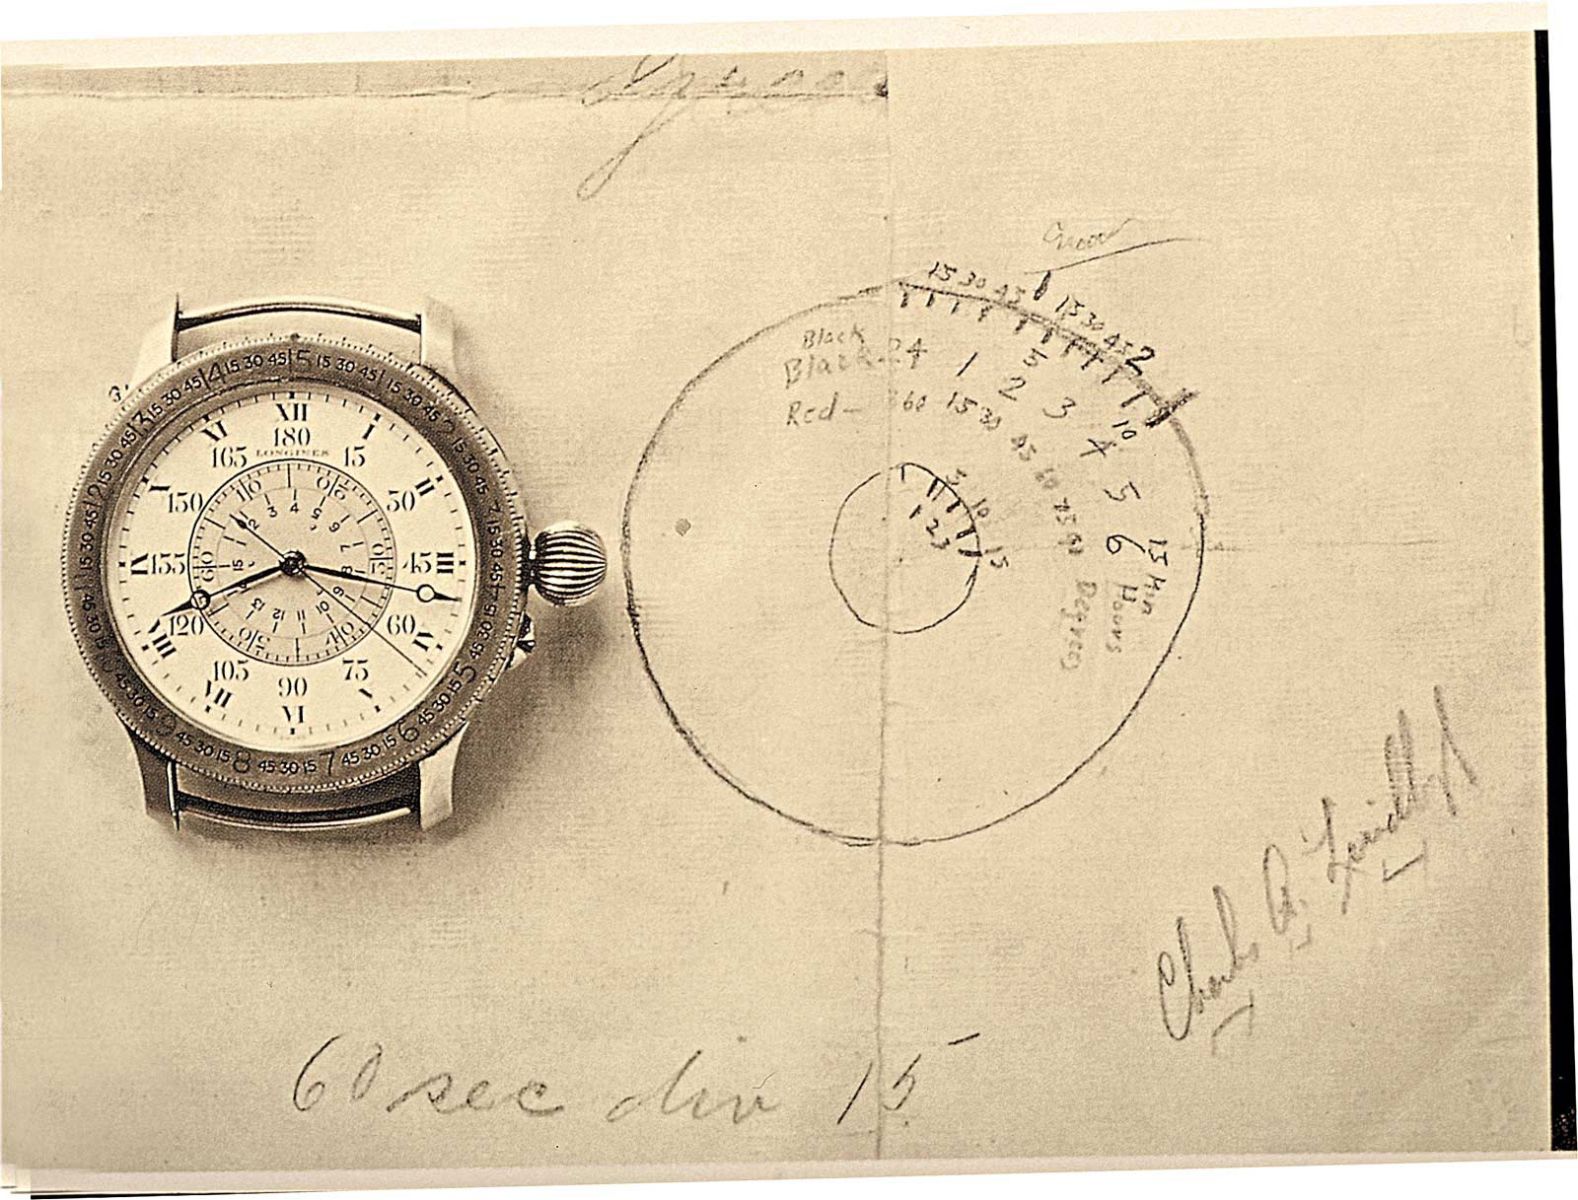 Longines Hour Angle - Chiếc đồng hồ đánh dấu đánh dấu 90 năm phi công Charles Lindberg một mình vượt Đại Tây Dương